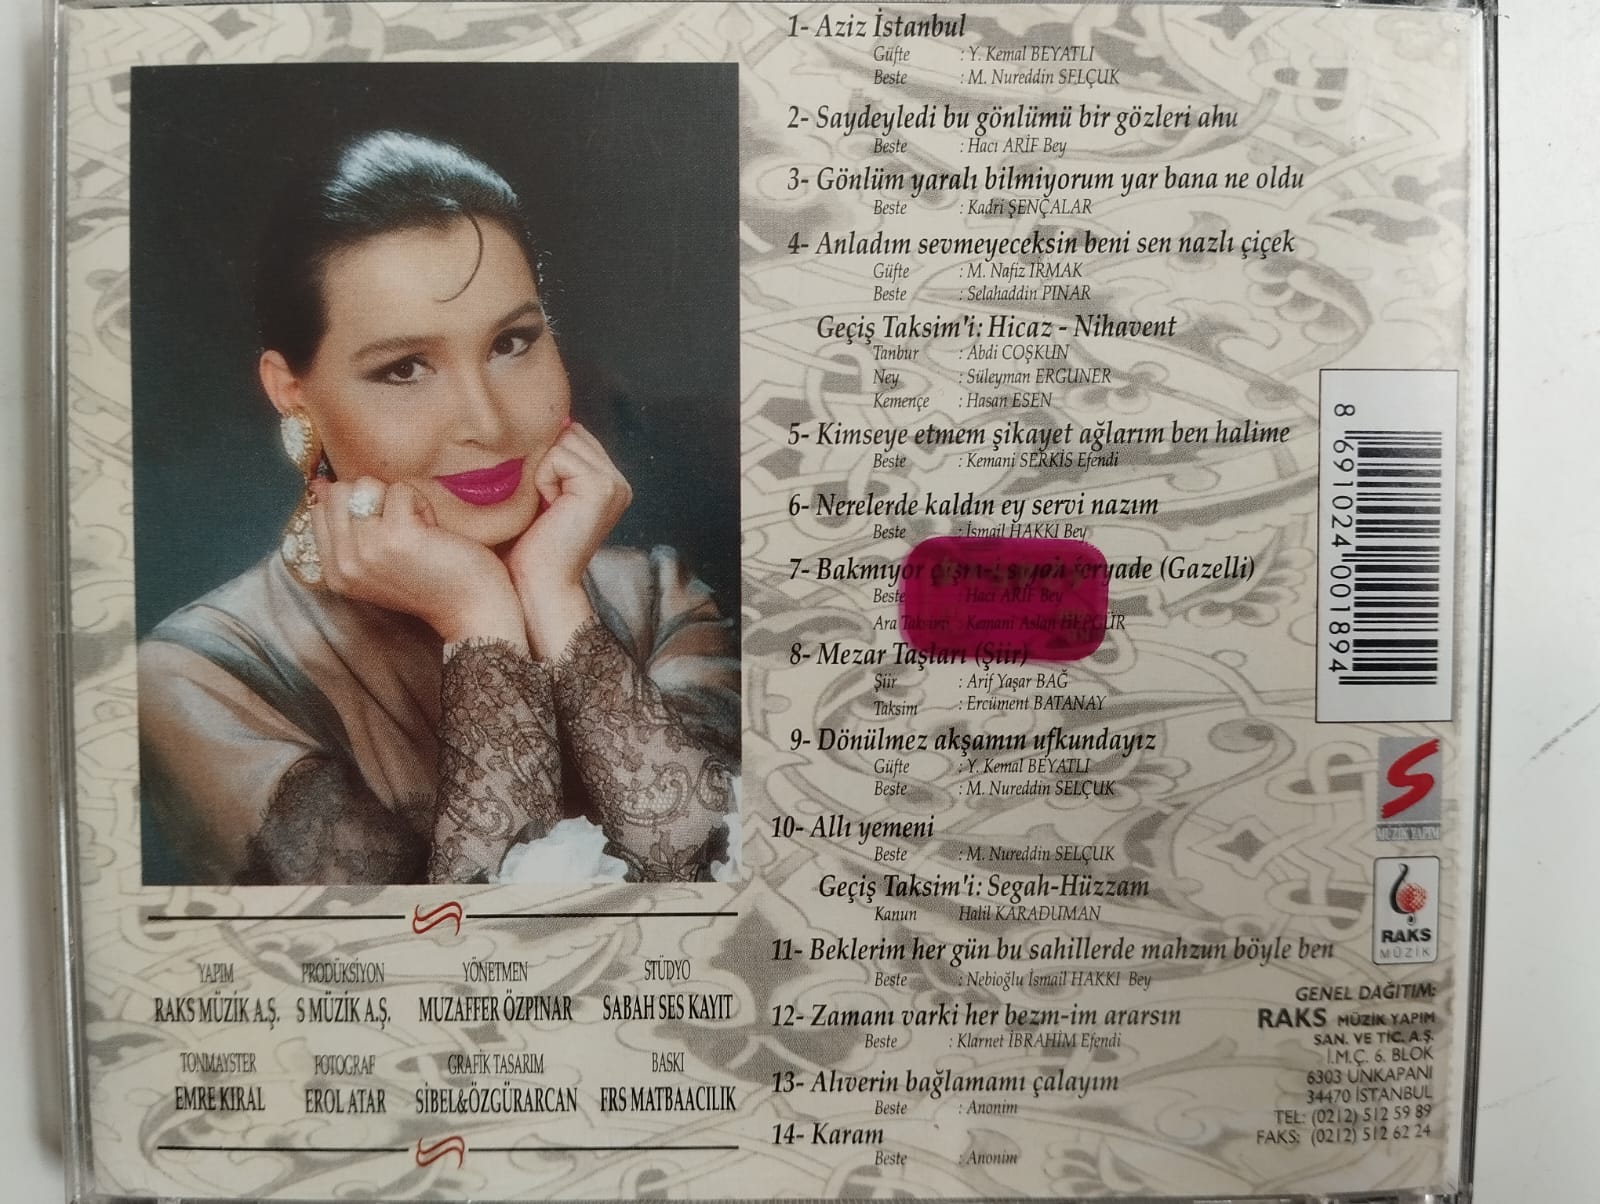 Bülent Ersoy – Alaturka 1995 - Türkiye Basım -  2. El CD Albüm